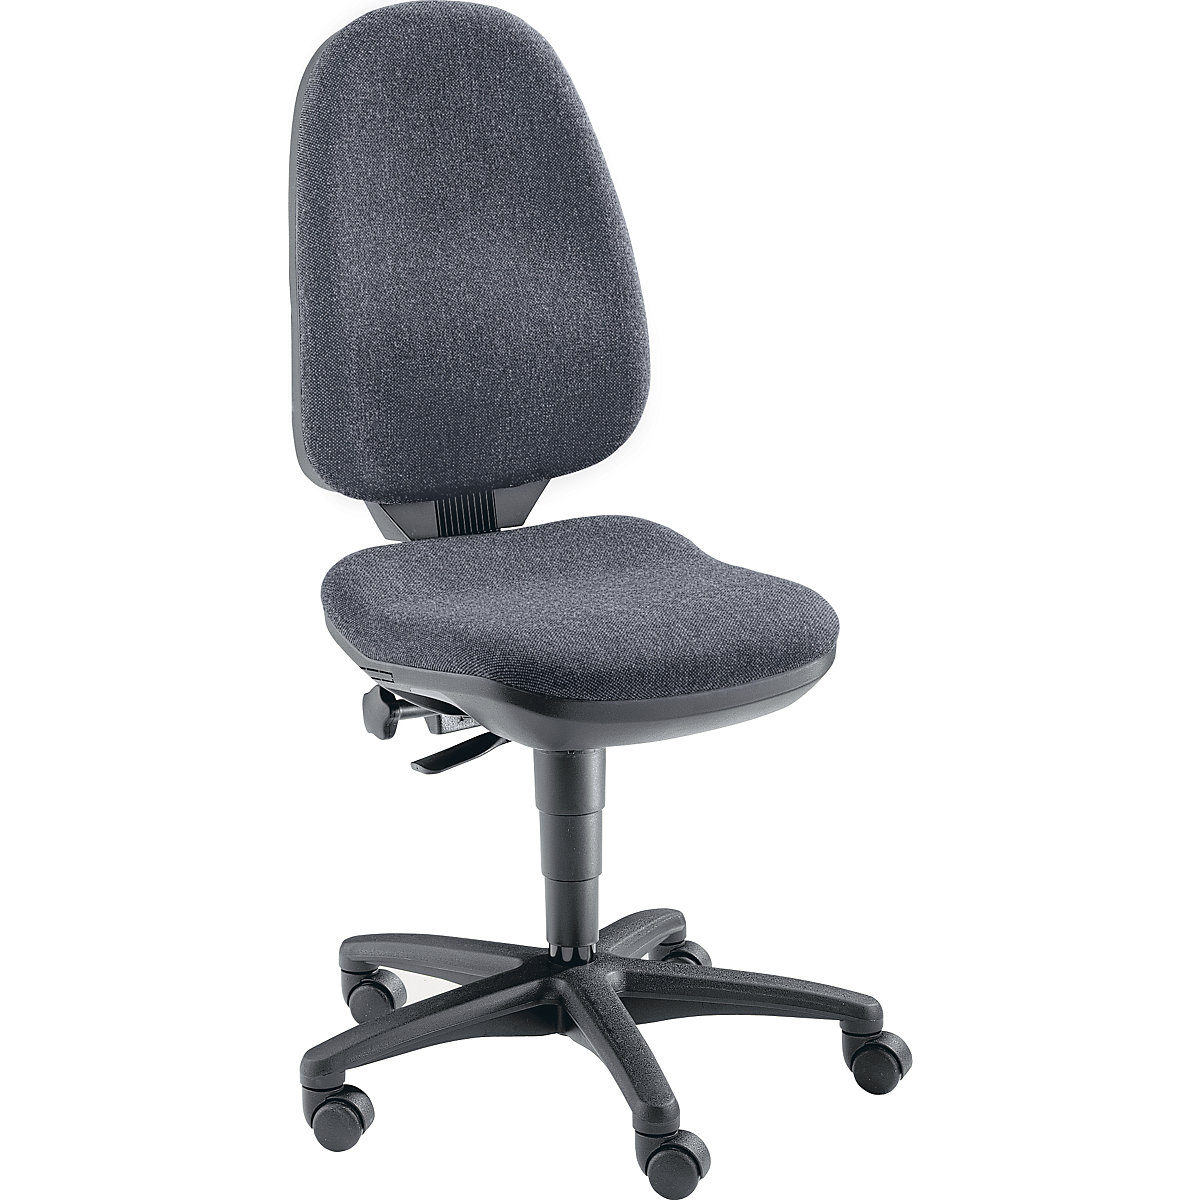 Okretna stolica s potporom za kralježnicu – Topstar, bez naslona za ruke, presvlaka u antracit boji-3